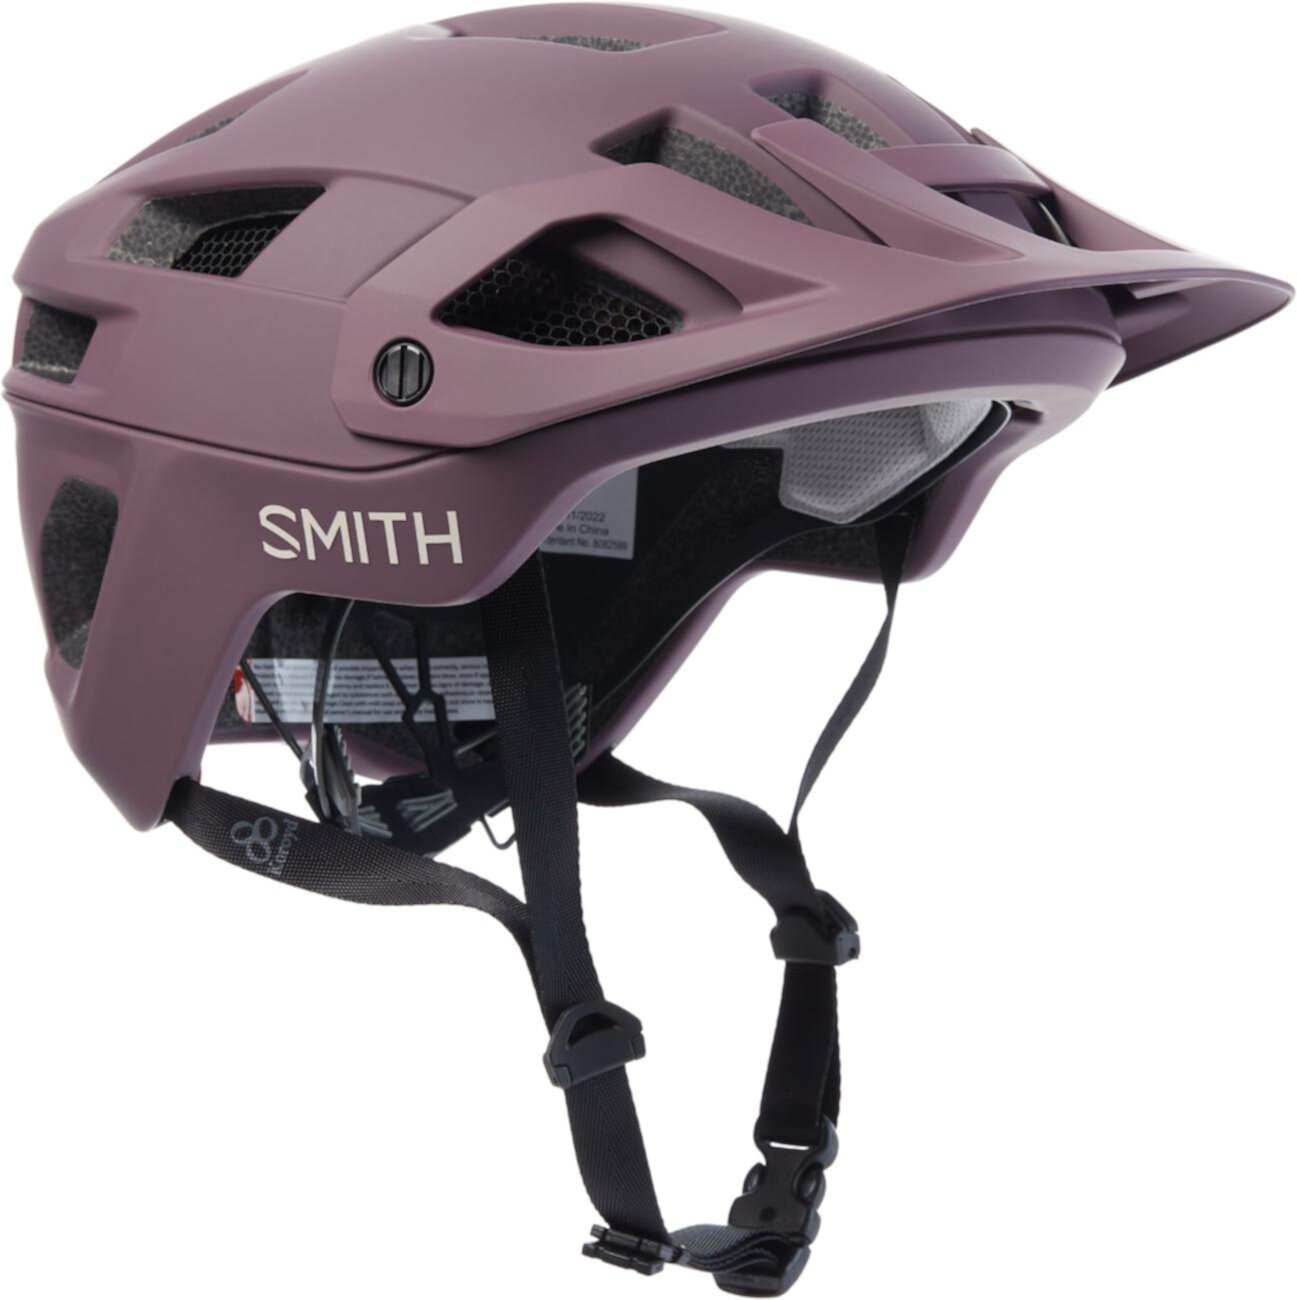 Велосипедный шлем Engage 2 Mips Smith